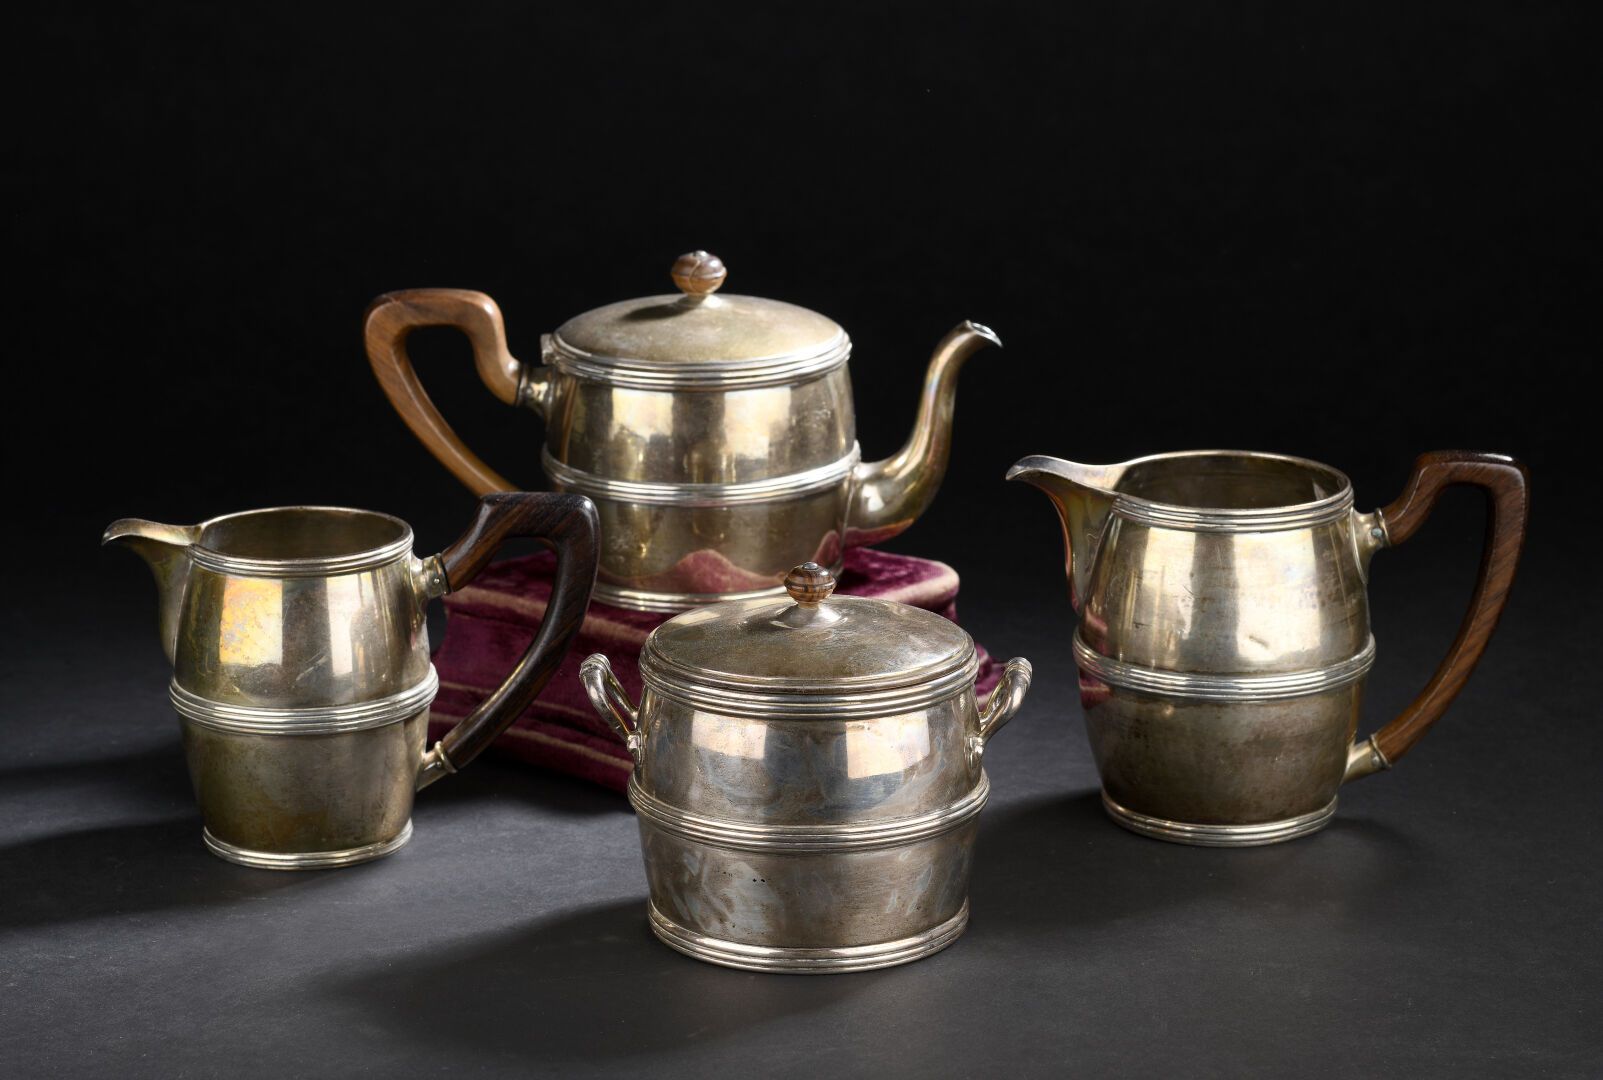 Null 淘宝网
带米诺尔标记的银质茶具
它包括一个茶壶，一个糖碗，一个牛奶壶和一个热水壶。呈桶状，手柄为紫檀木。
毛重1609克